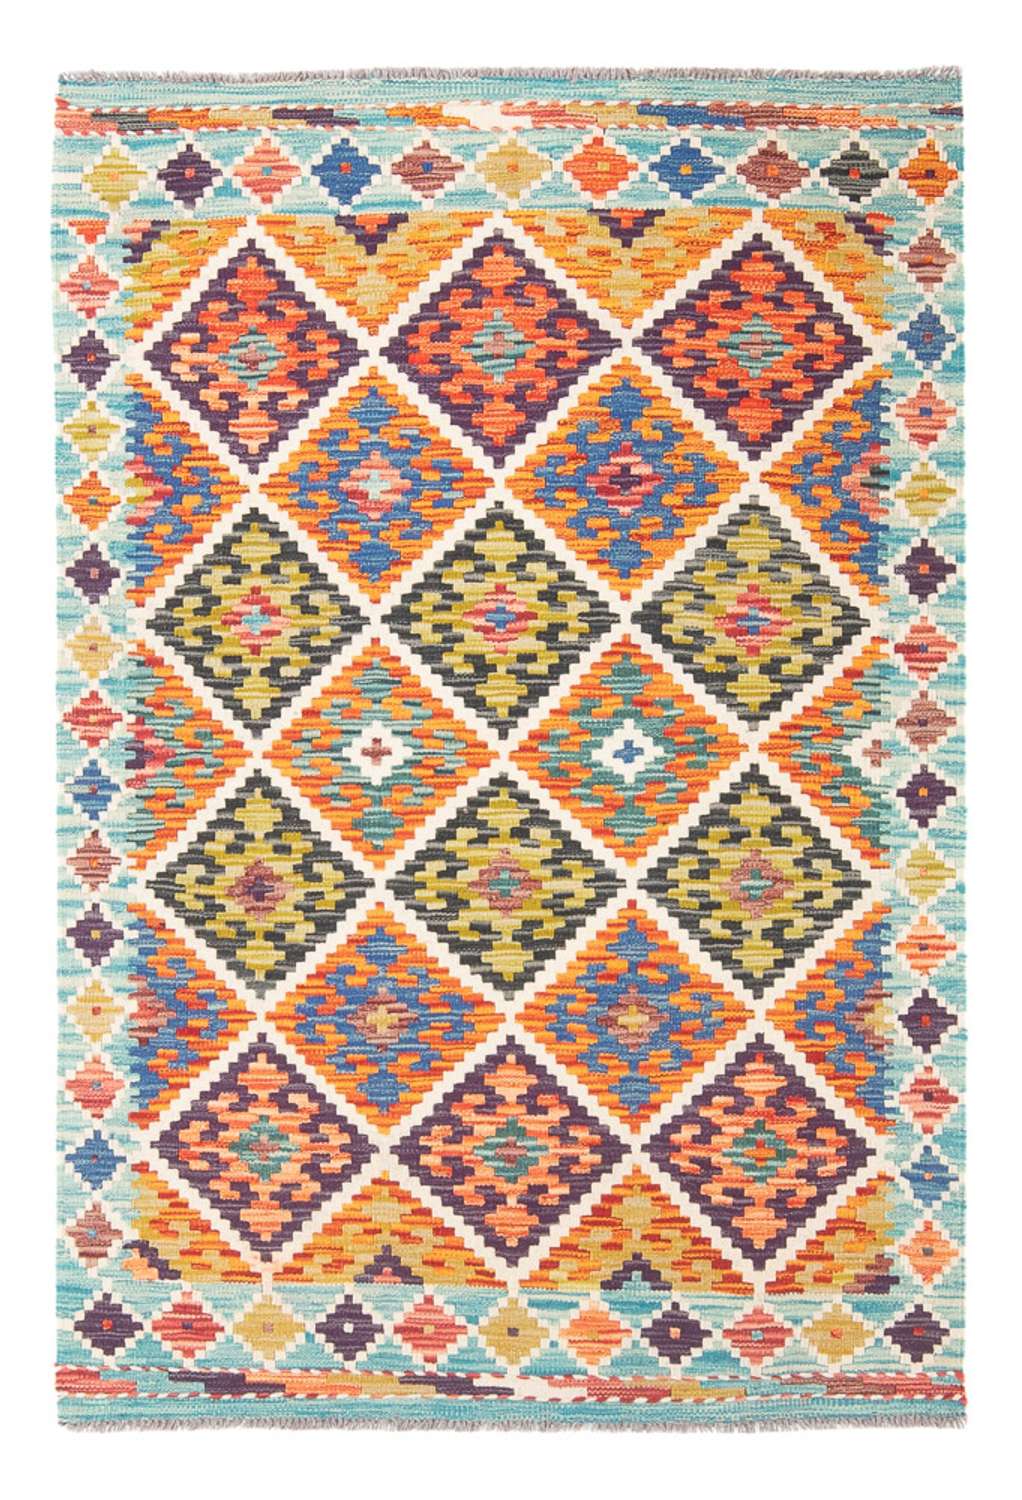 Tapete Kelim - Splash - 153 x 99 cm - multicolorido